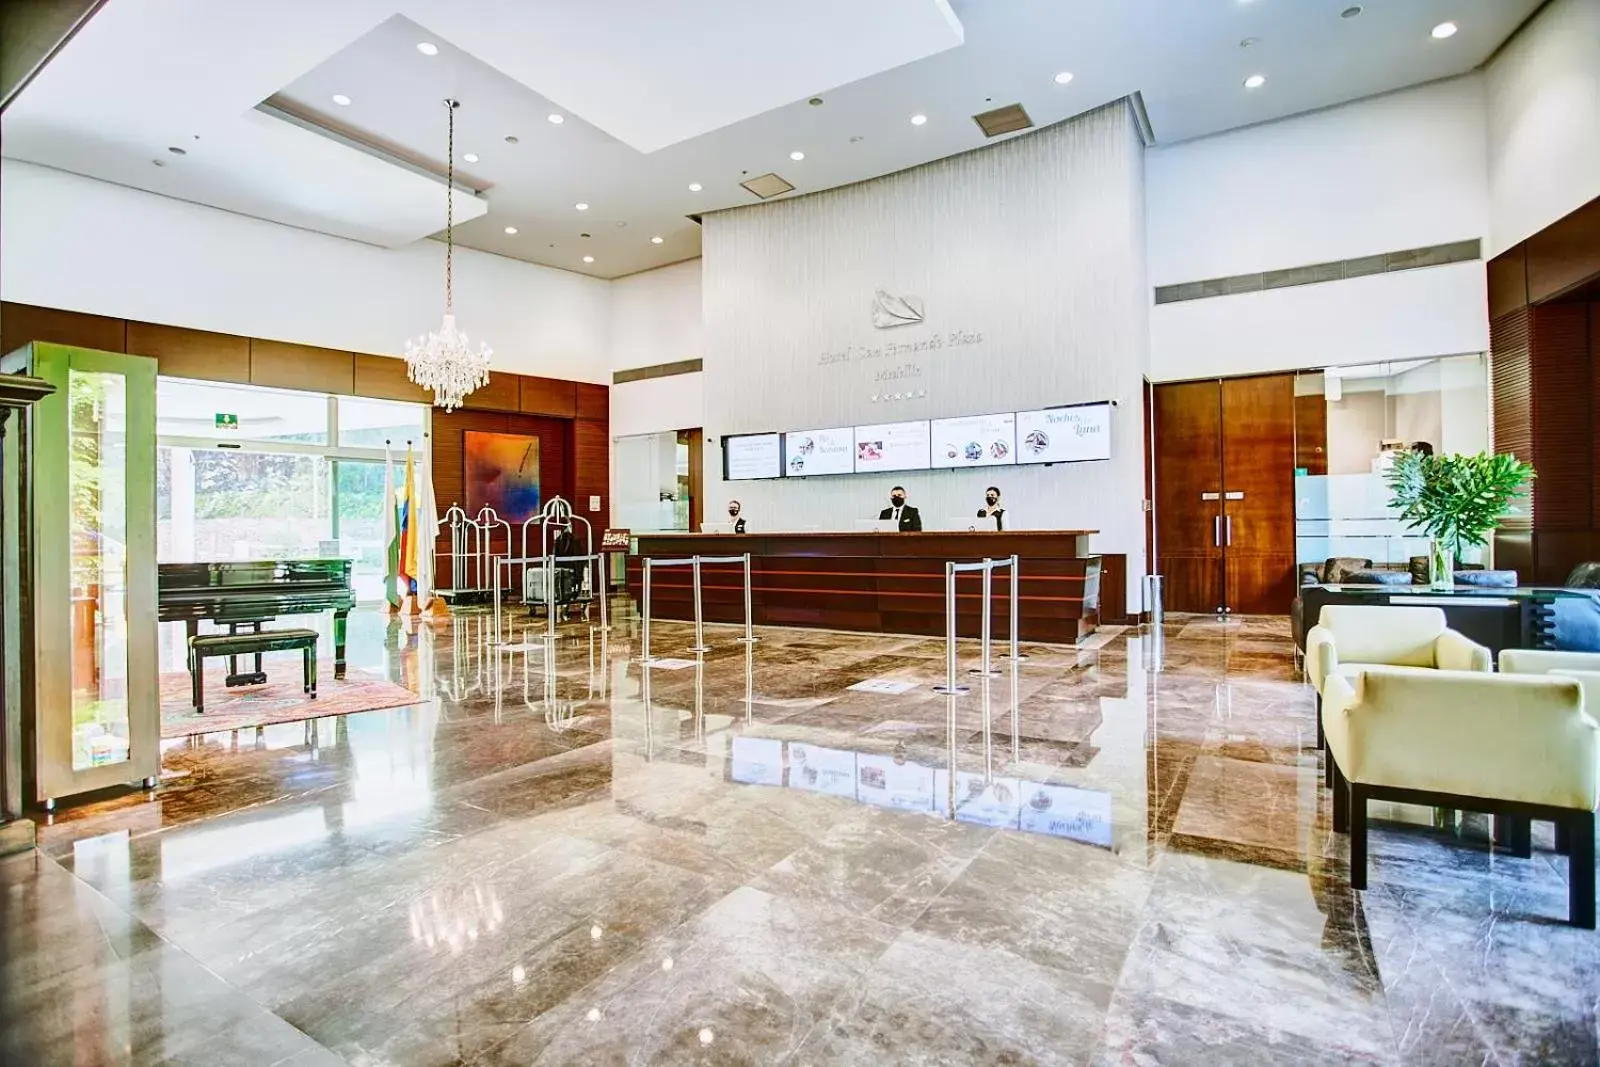 Lobby or reception, Lobby/Reception in Hotel San Fernando Plaza